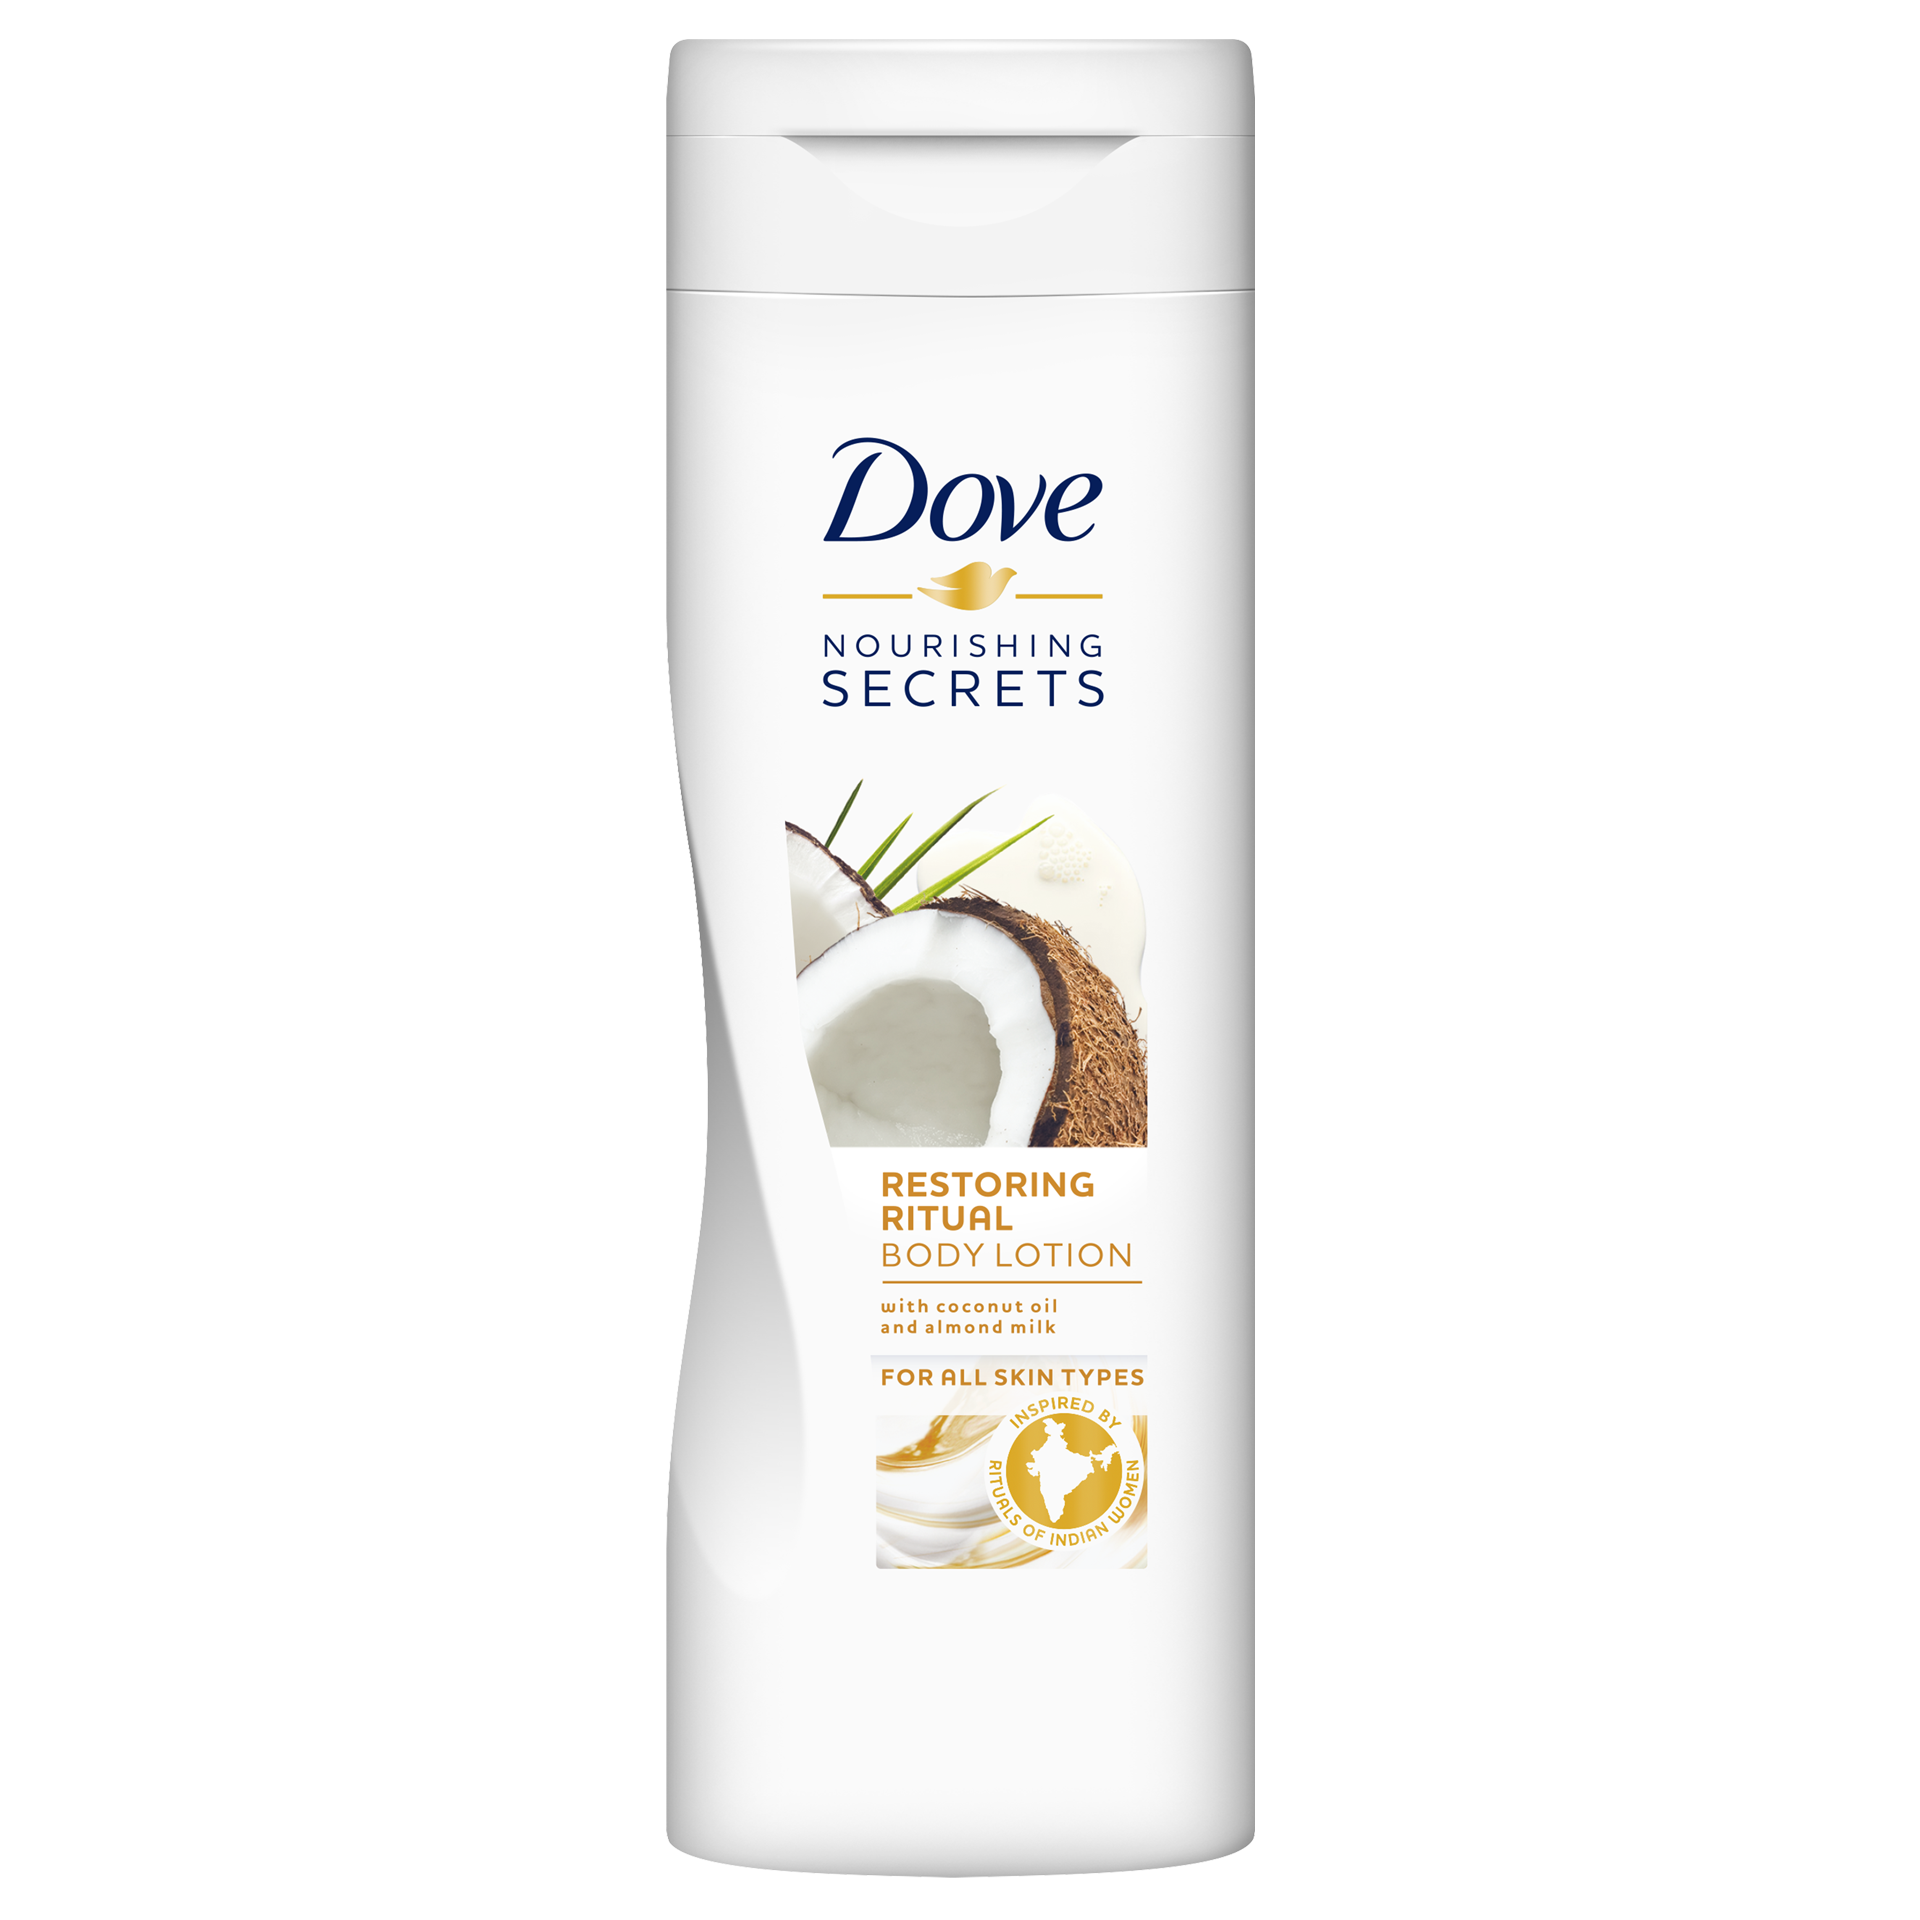 Dove Nourishing Secrets Lotion Restoring Ritual- Coconut Oil and Almond Milk 250ml